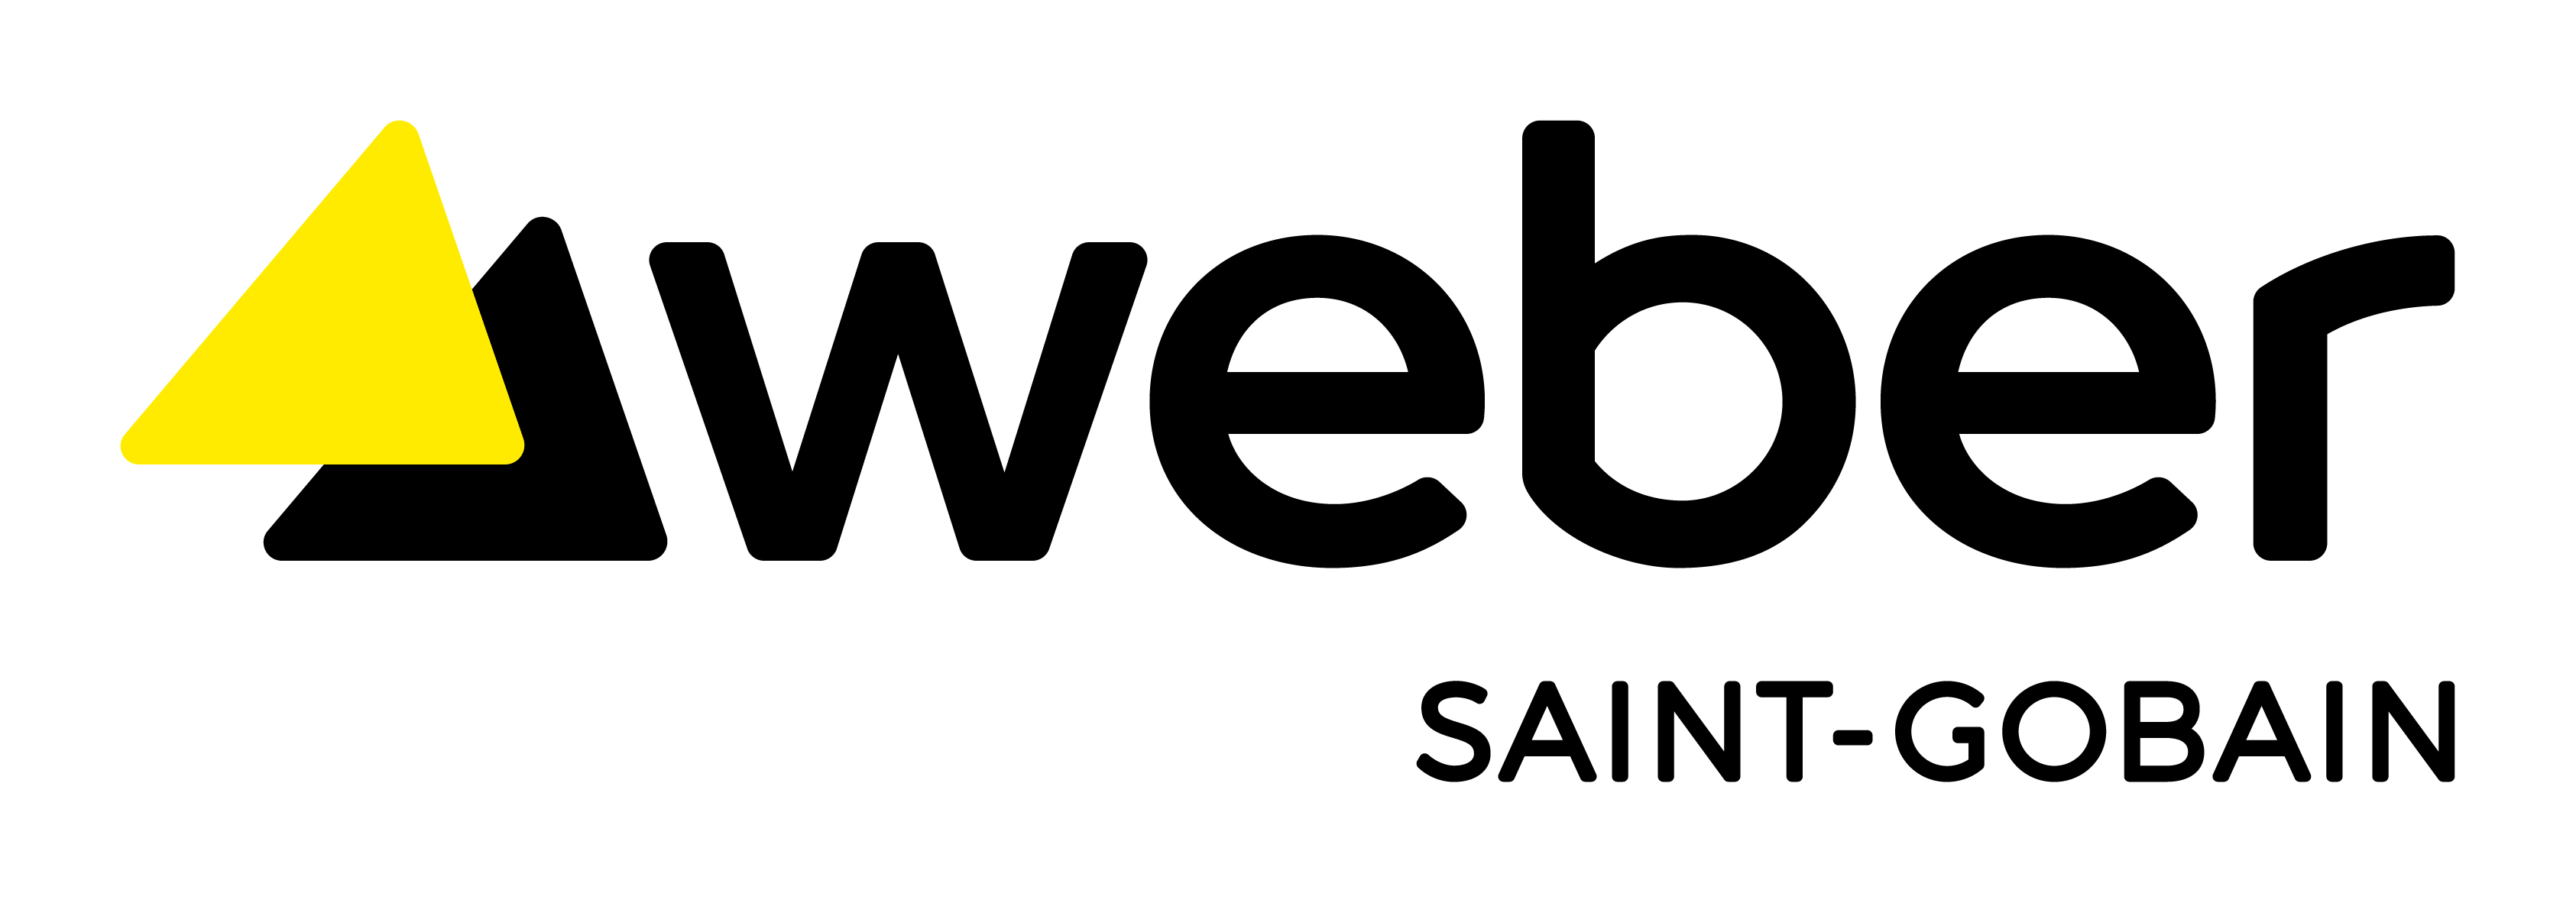 Weber Logo